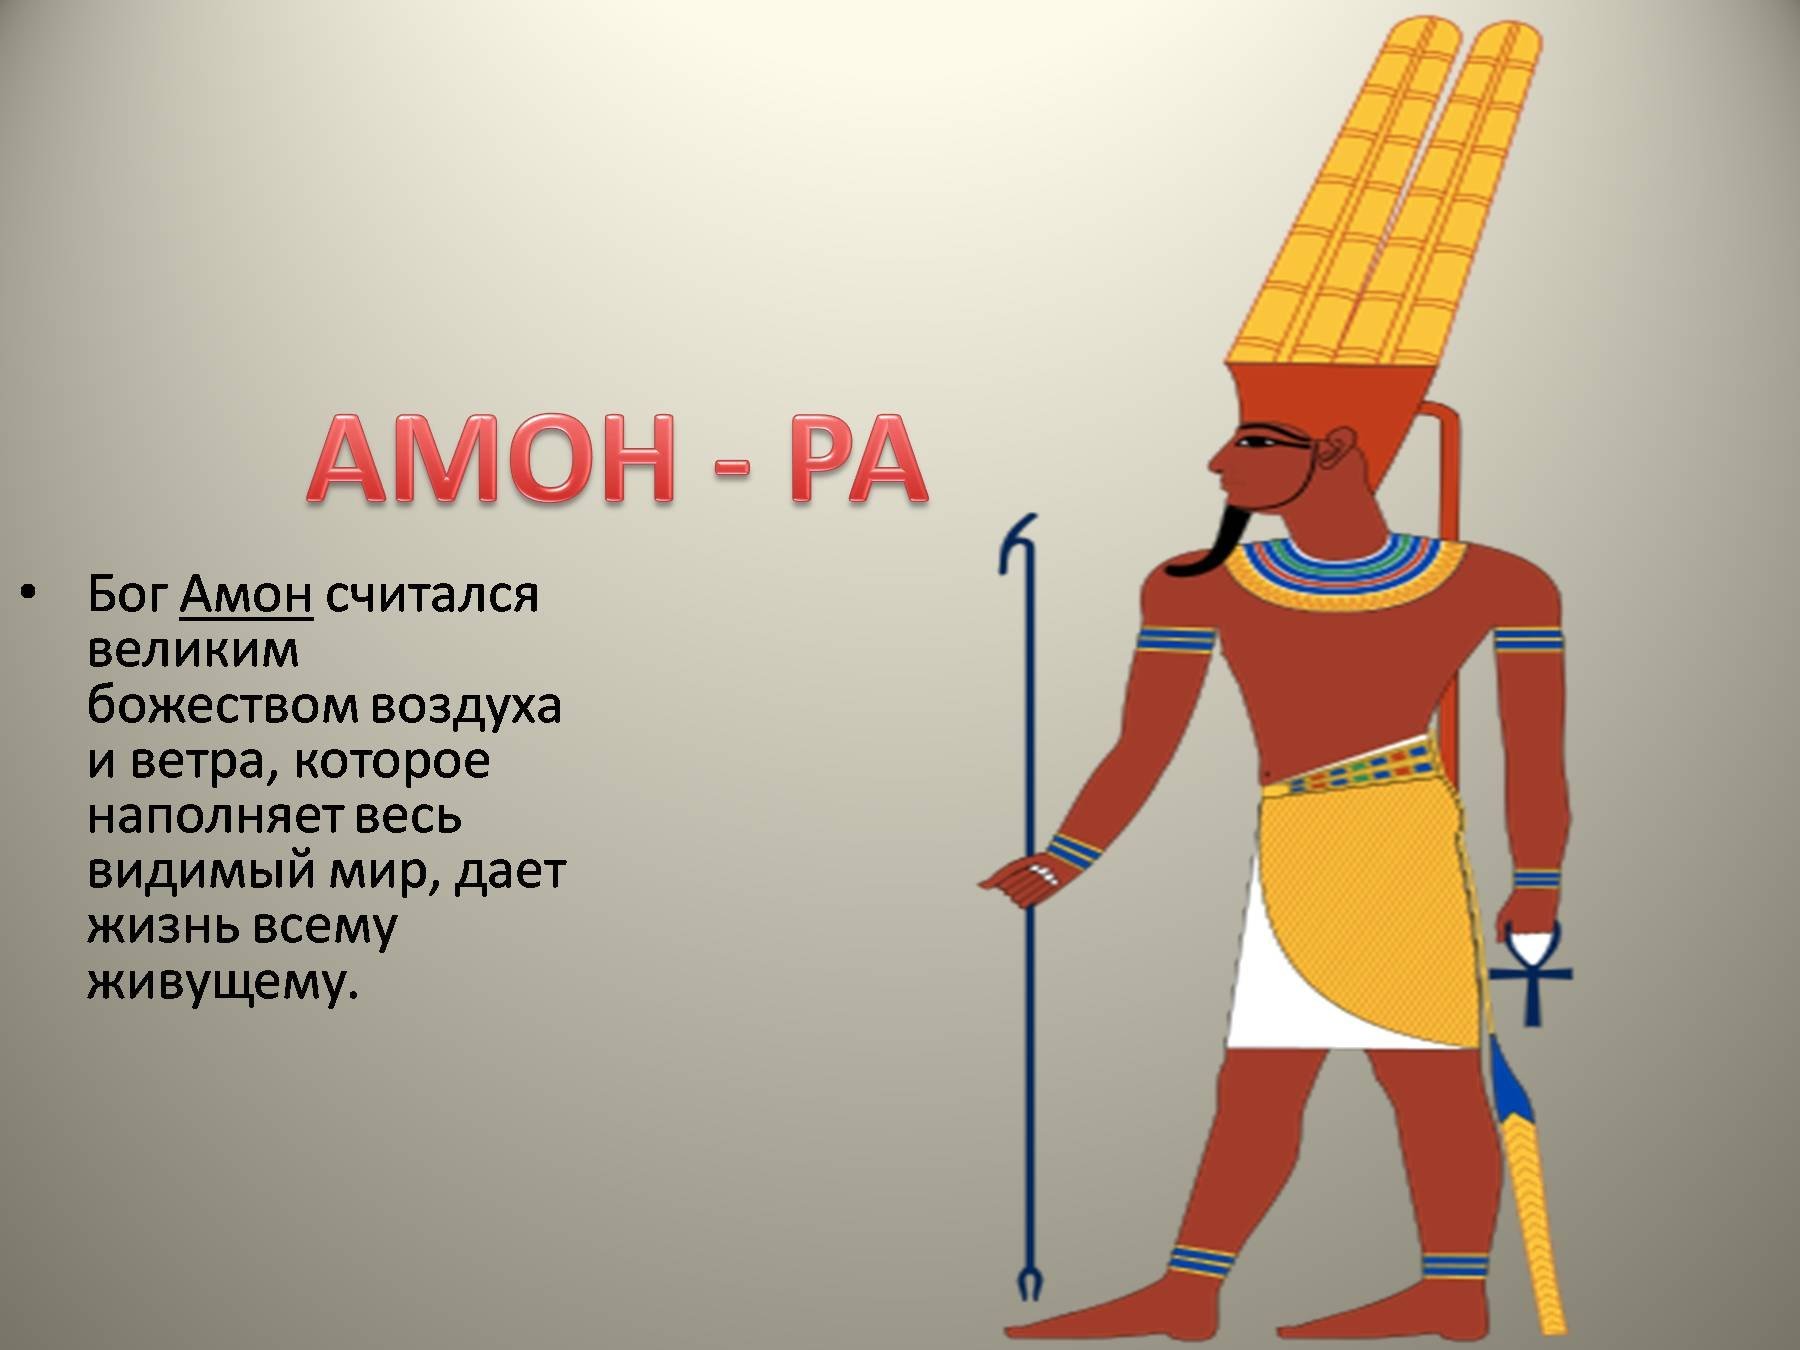 Страна где поклонялись амон ра. Бог Амон в древнем Египте. Боги древнего Египта 5 класс Амон. Бог Амон ра в древнем Египте. Бог Амон в древнем Египте рисунок.